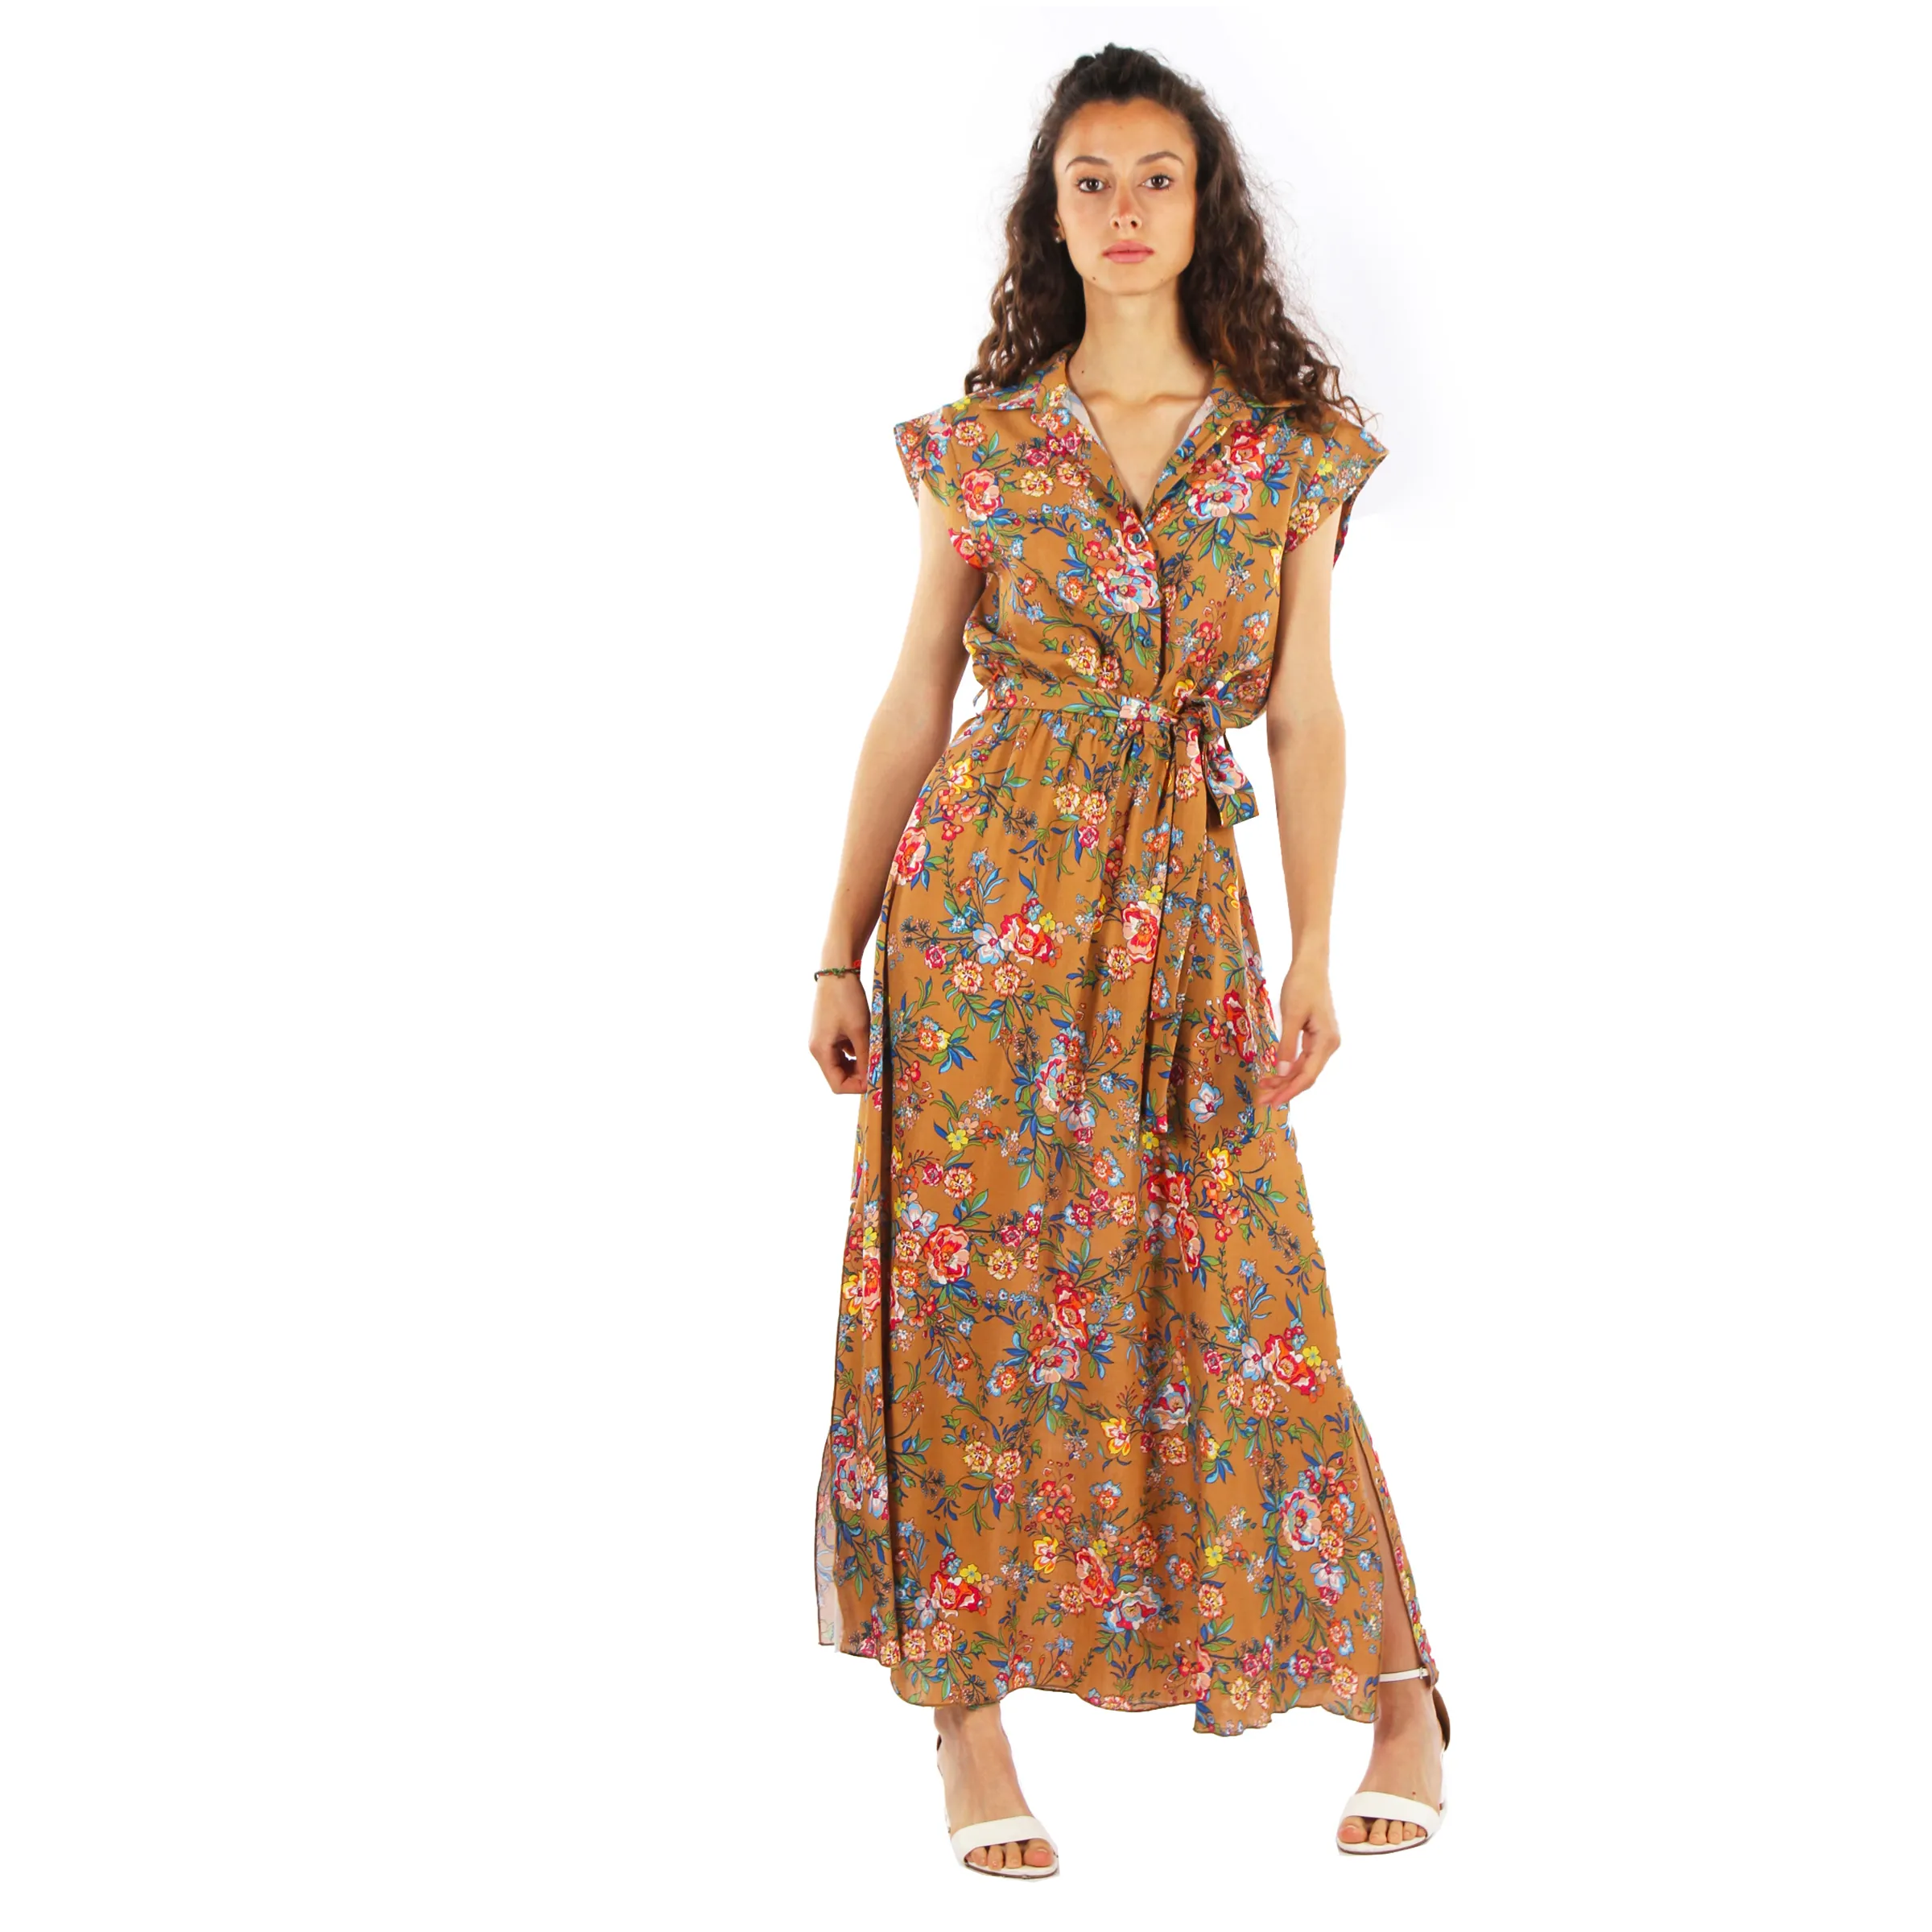 Versatilidad elegante, vestido floral de viscosa-poliéster en marrón con estampado de flores, ideal para cualquier ocasión tamaño mediano